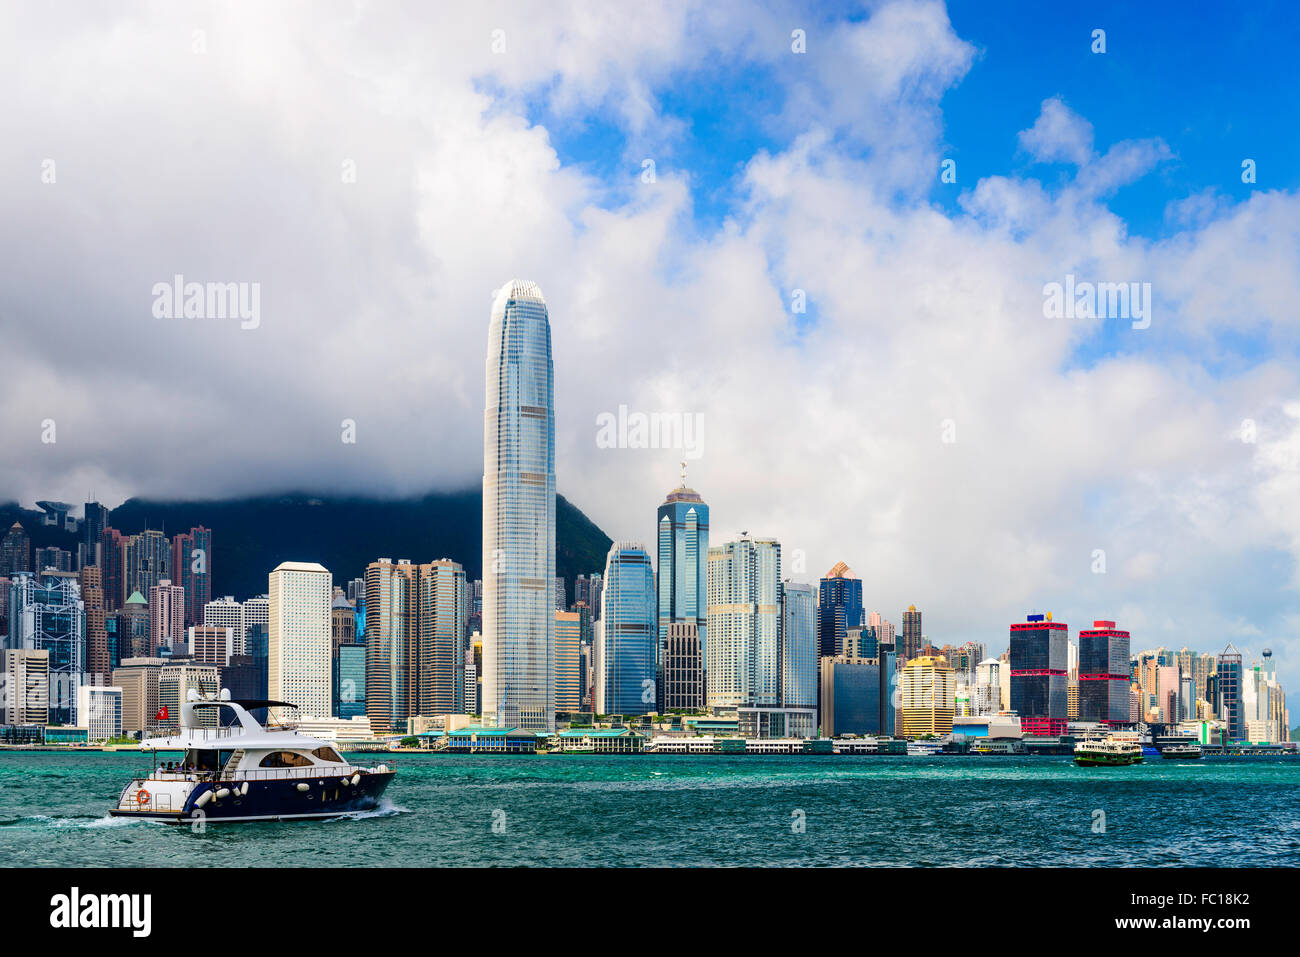 Hong Kong, China skyline at the bay. Stock Photo